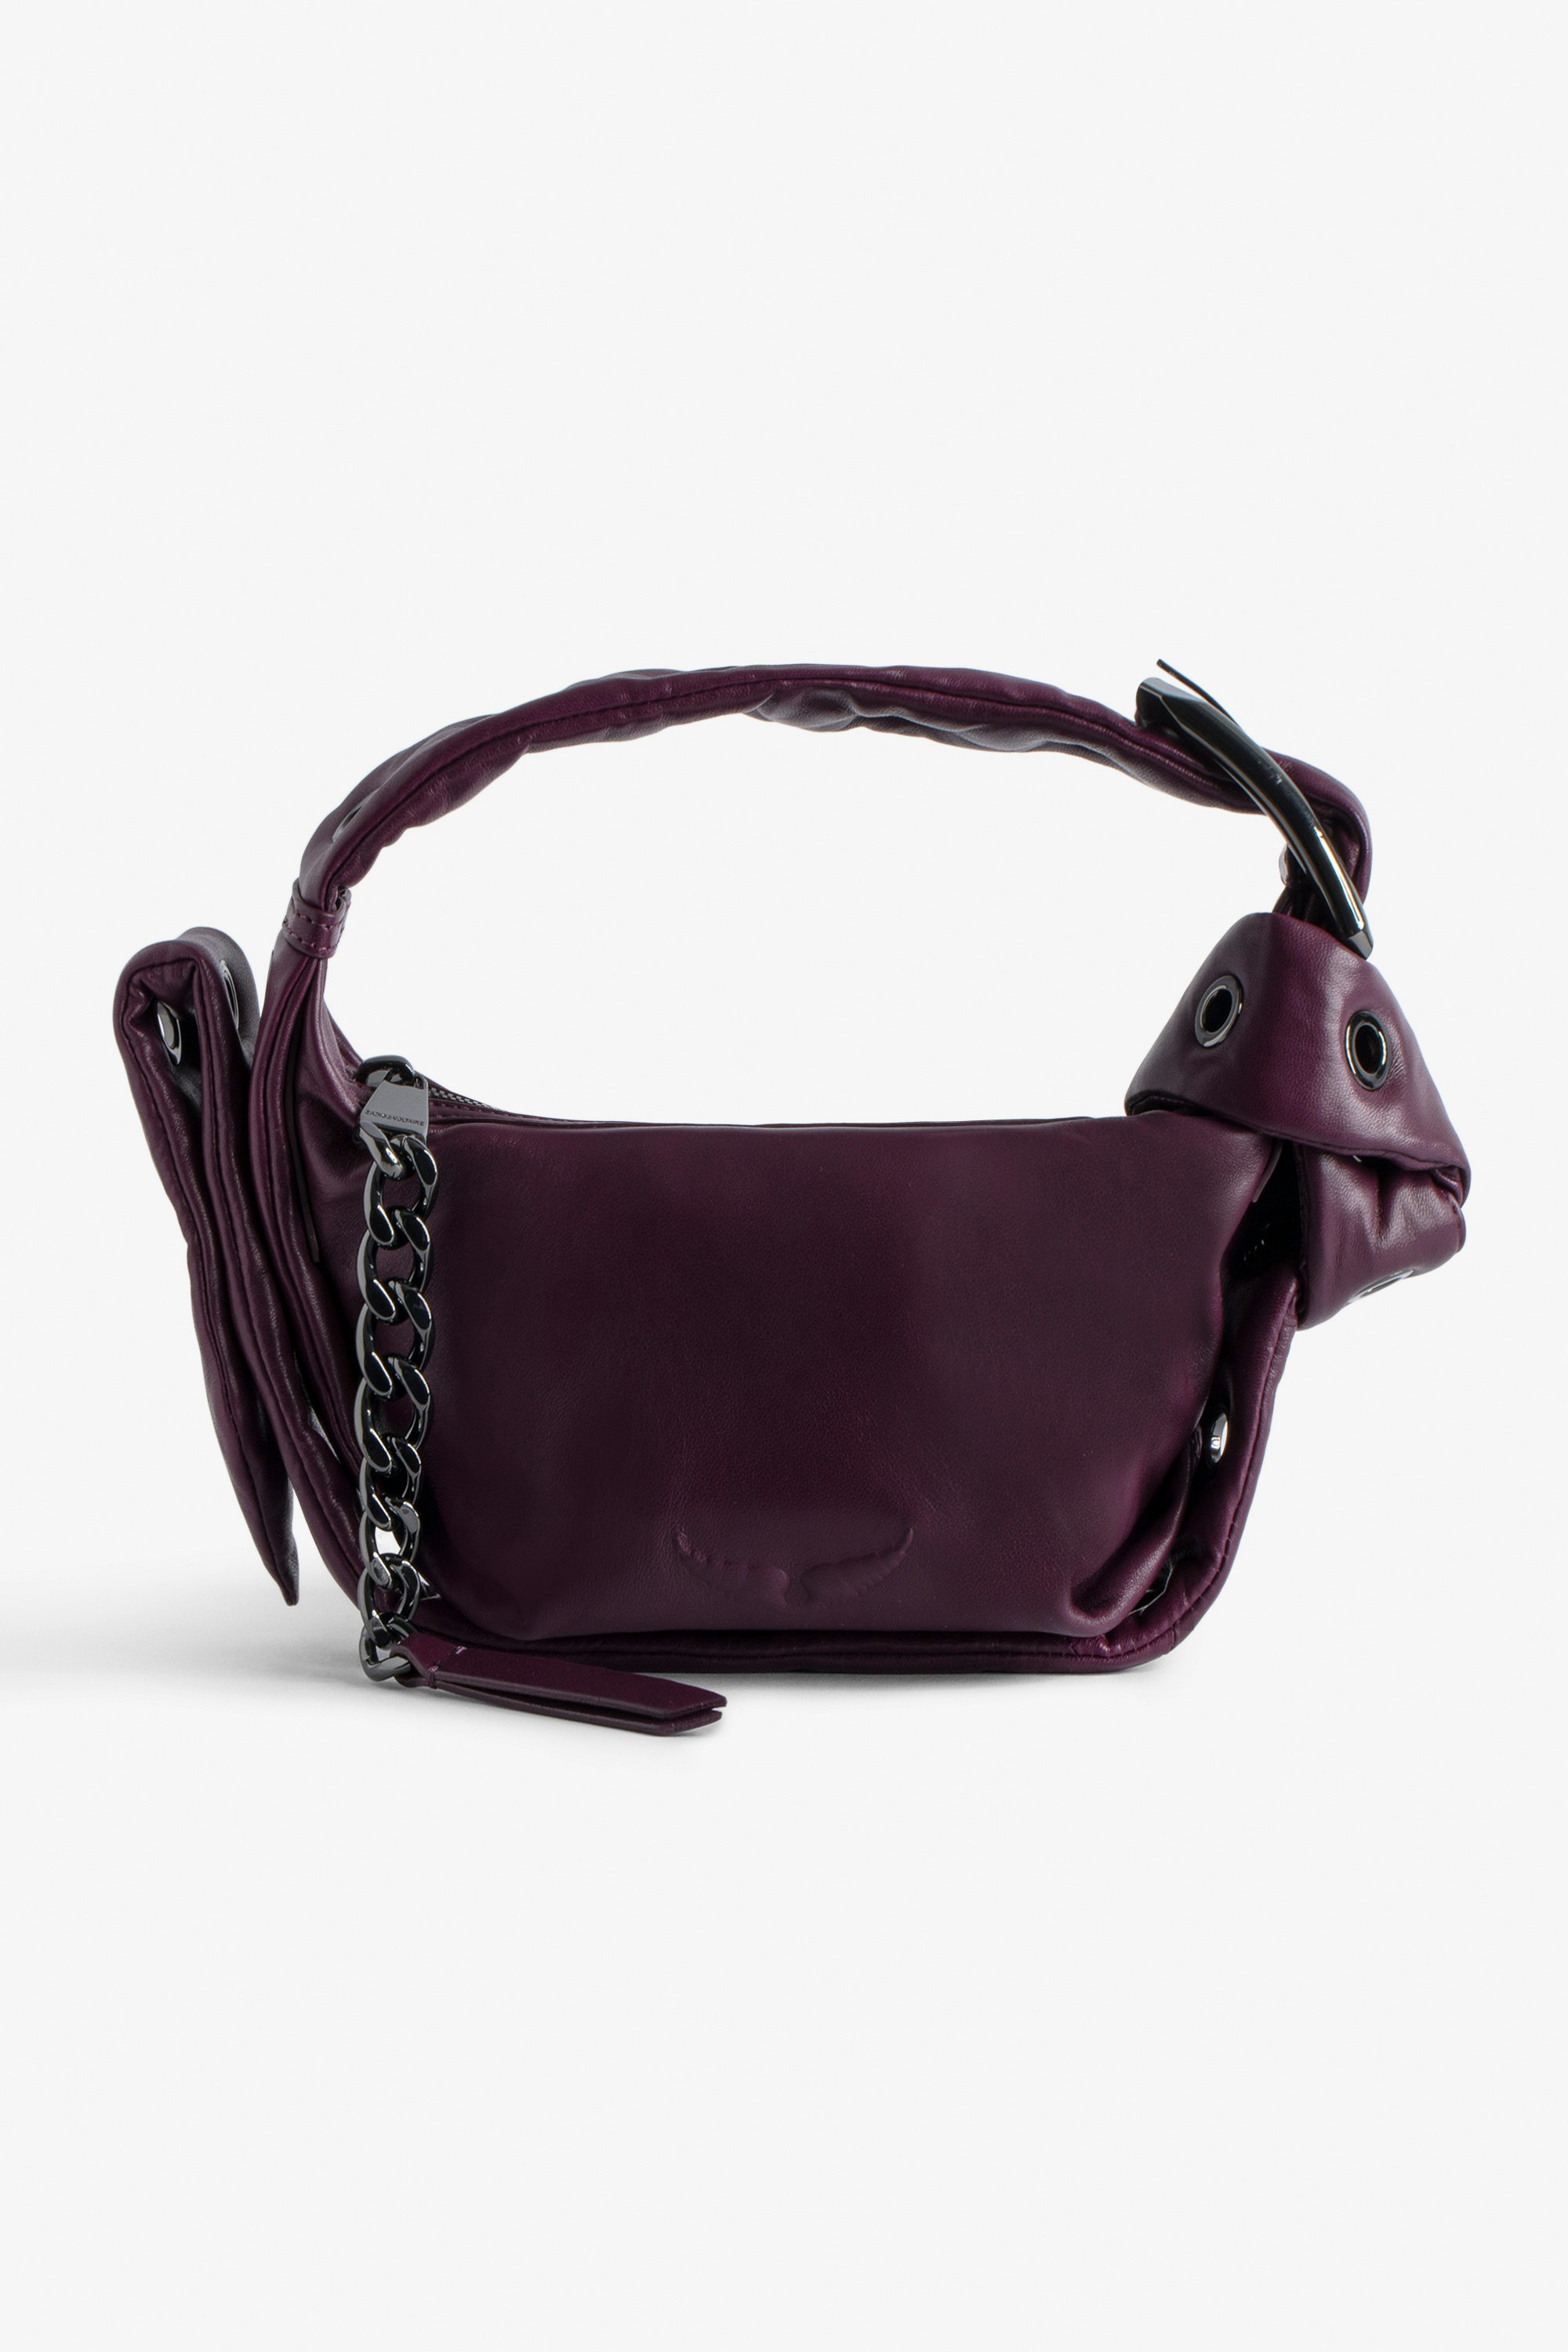 Handtasche Le Cecilia XS Obsession - Kleine Tasche aus Glattleder in Bordeauxrot mit Schulterriemen und C-förmiger Metallschnalle für Damen.